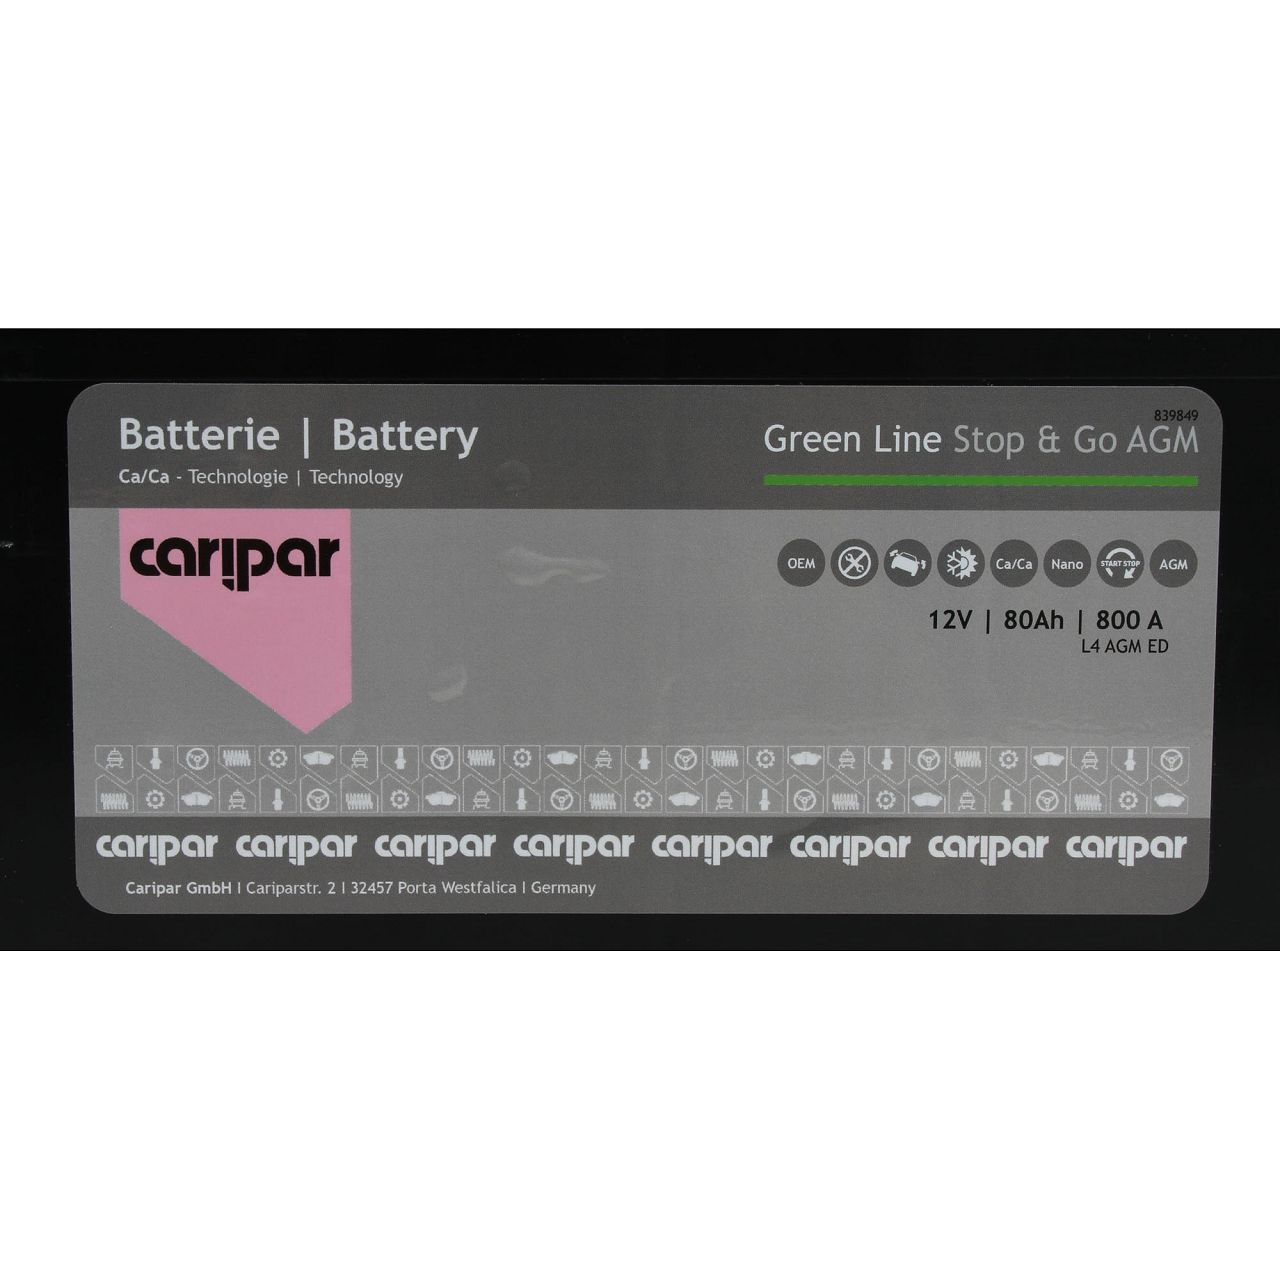 CARIPAR GREEN LINE AGM START STOP Autobatterie Starterbatterie 12V